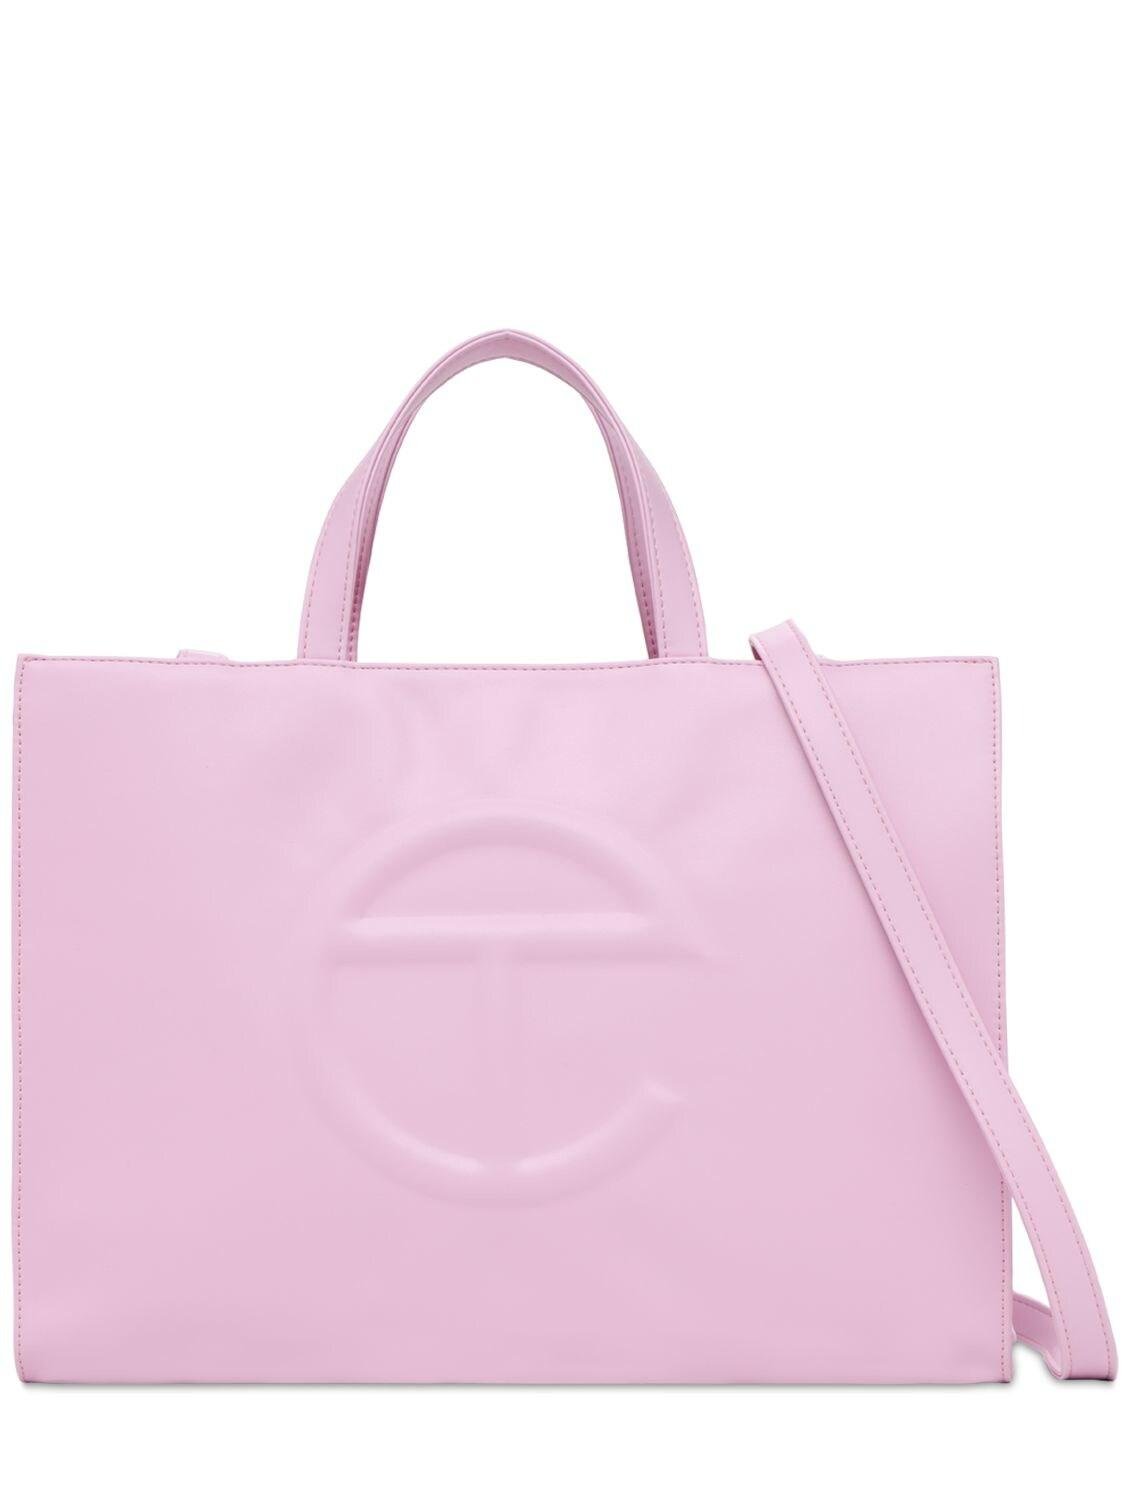 Telfar Medium Embossed Logo Tote Bag in Pink